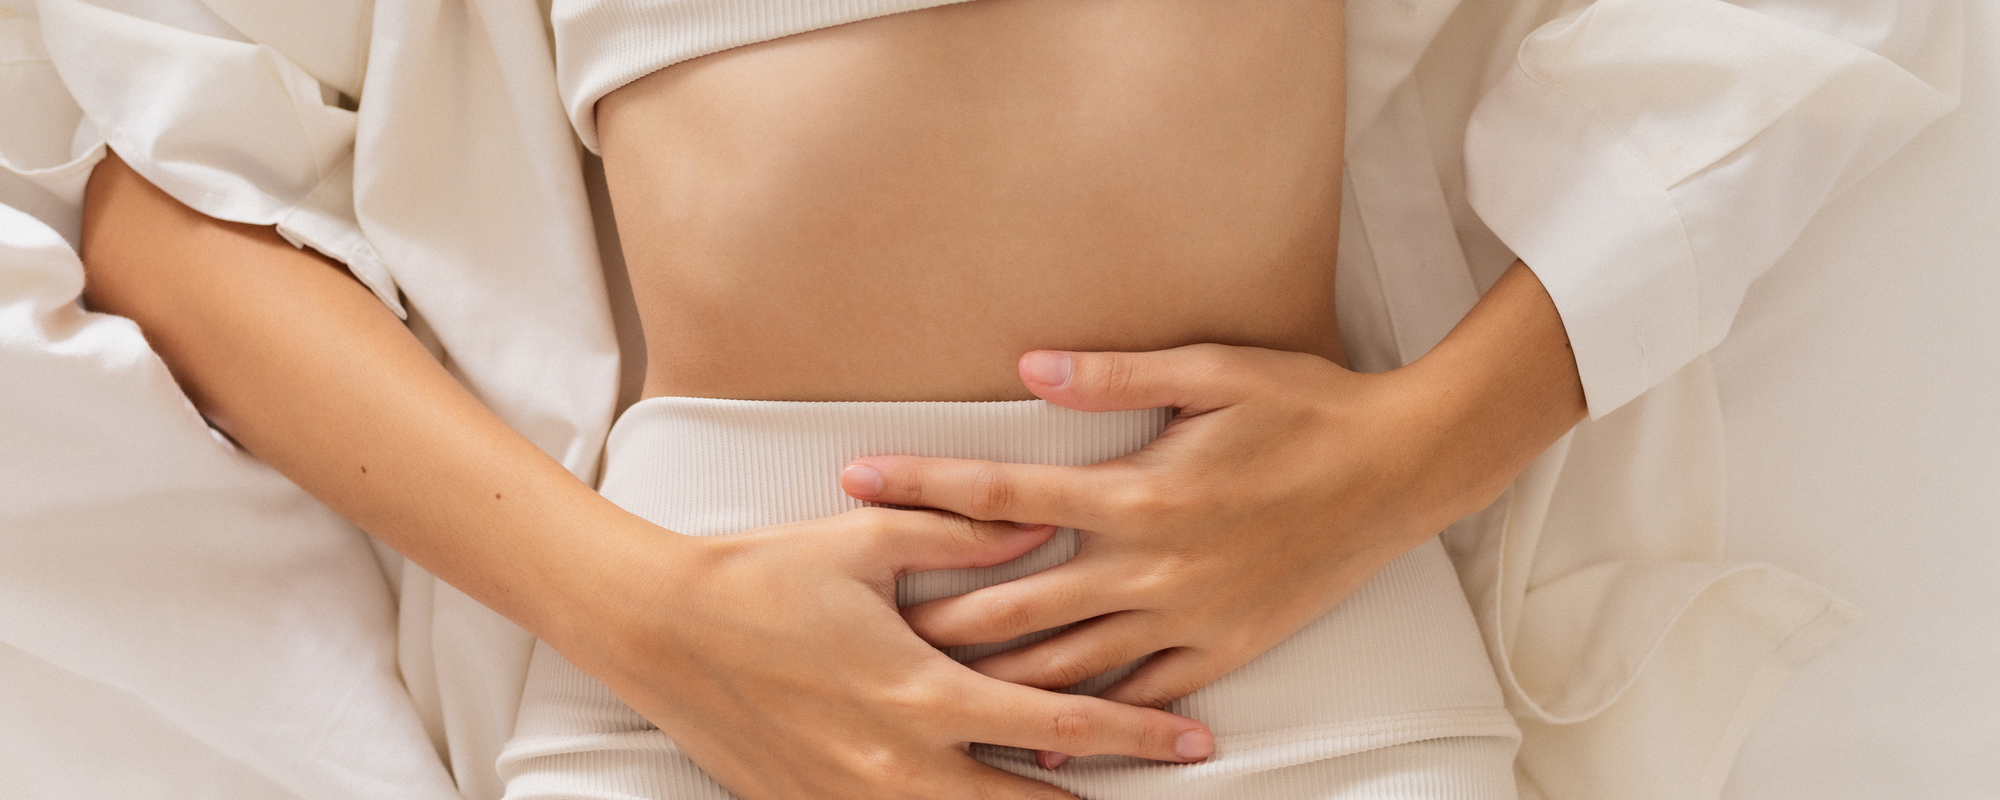 Endometriosis: What is it?